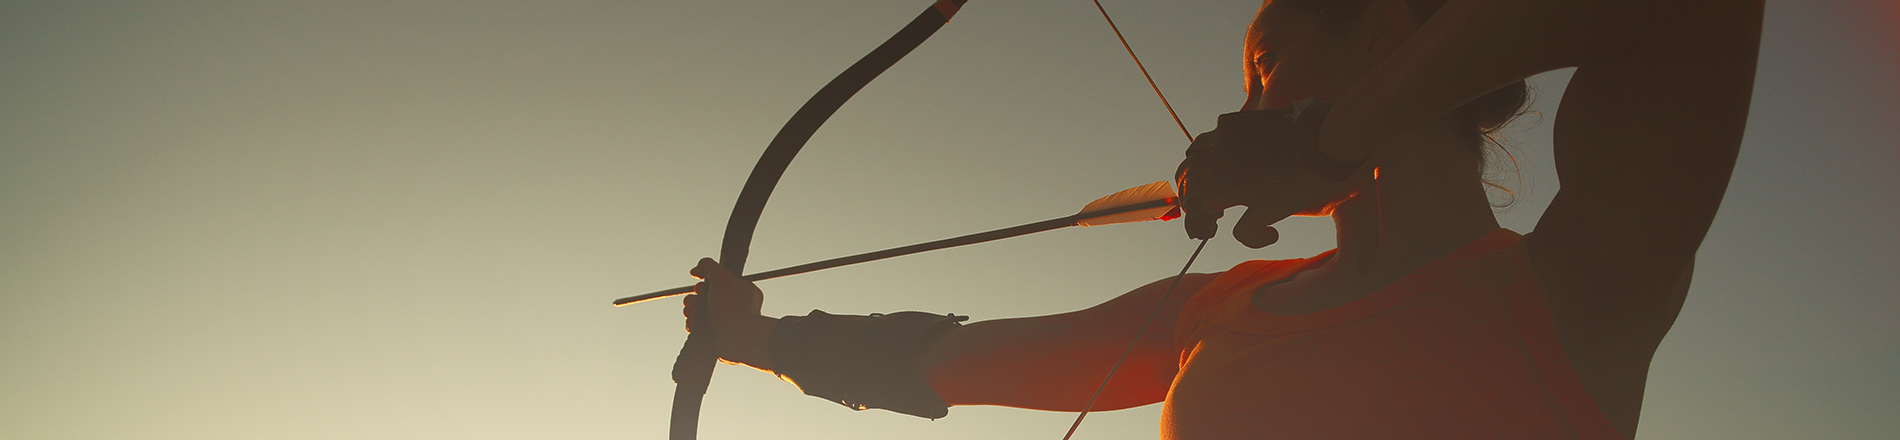 Archer with bow & arrow